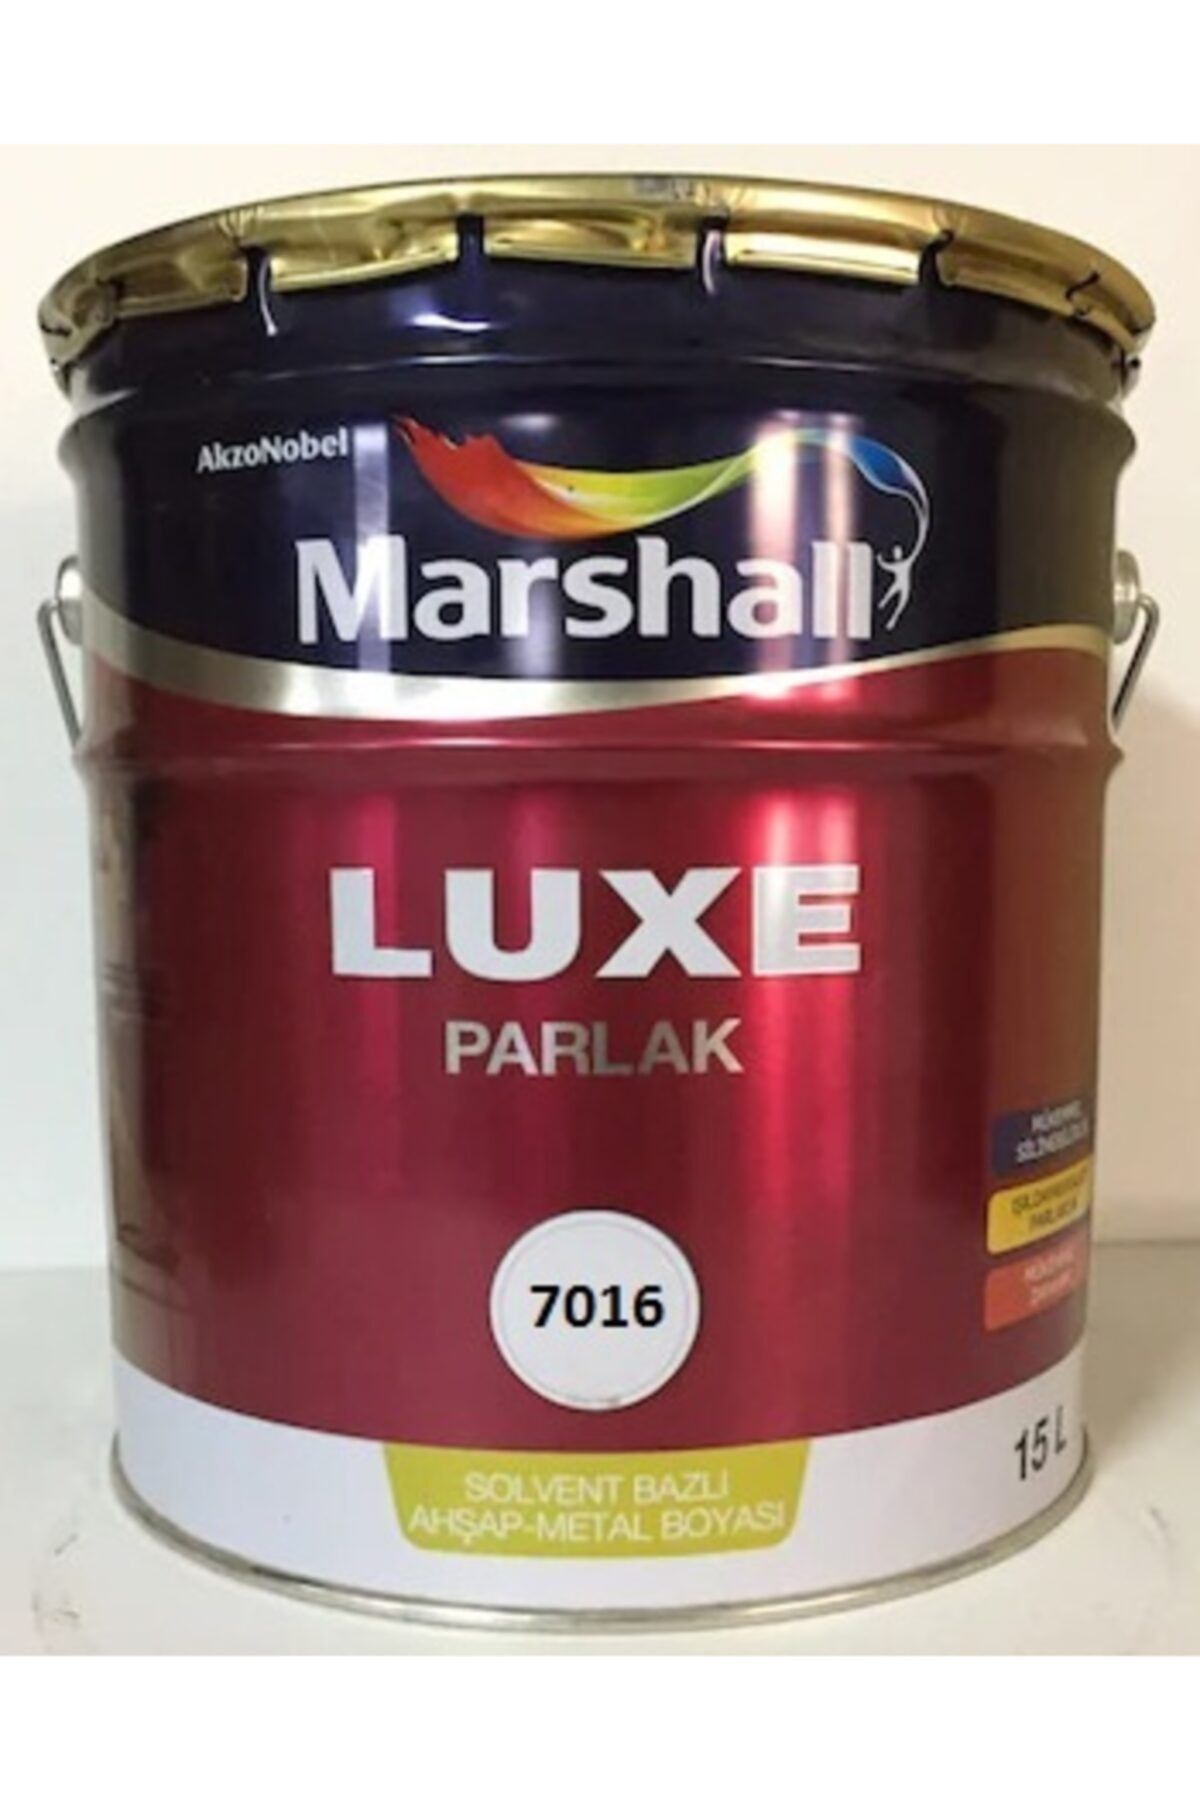 Marshall Luxe Parlak Yağlı Boya 15 Lt, 20 Kg Ral 7016 Anterasit Gri (makinada Renklendirilir)